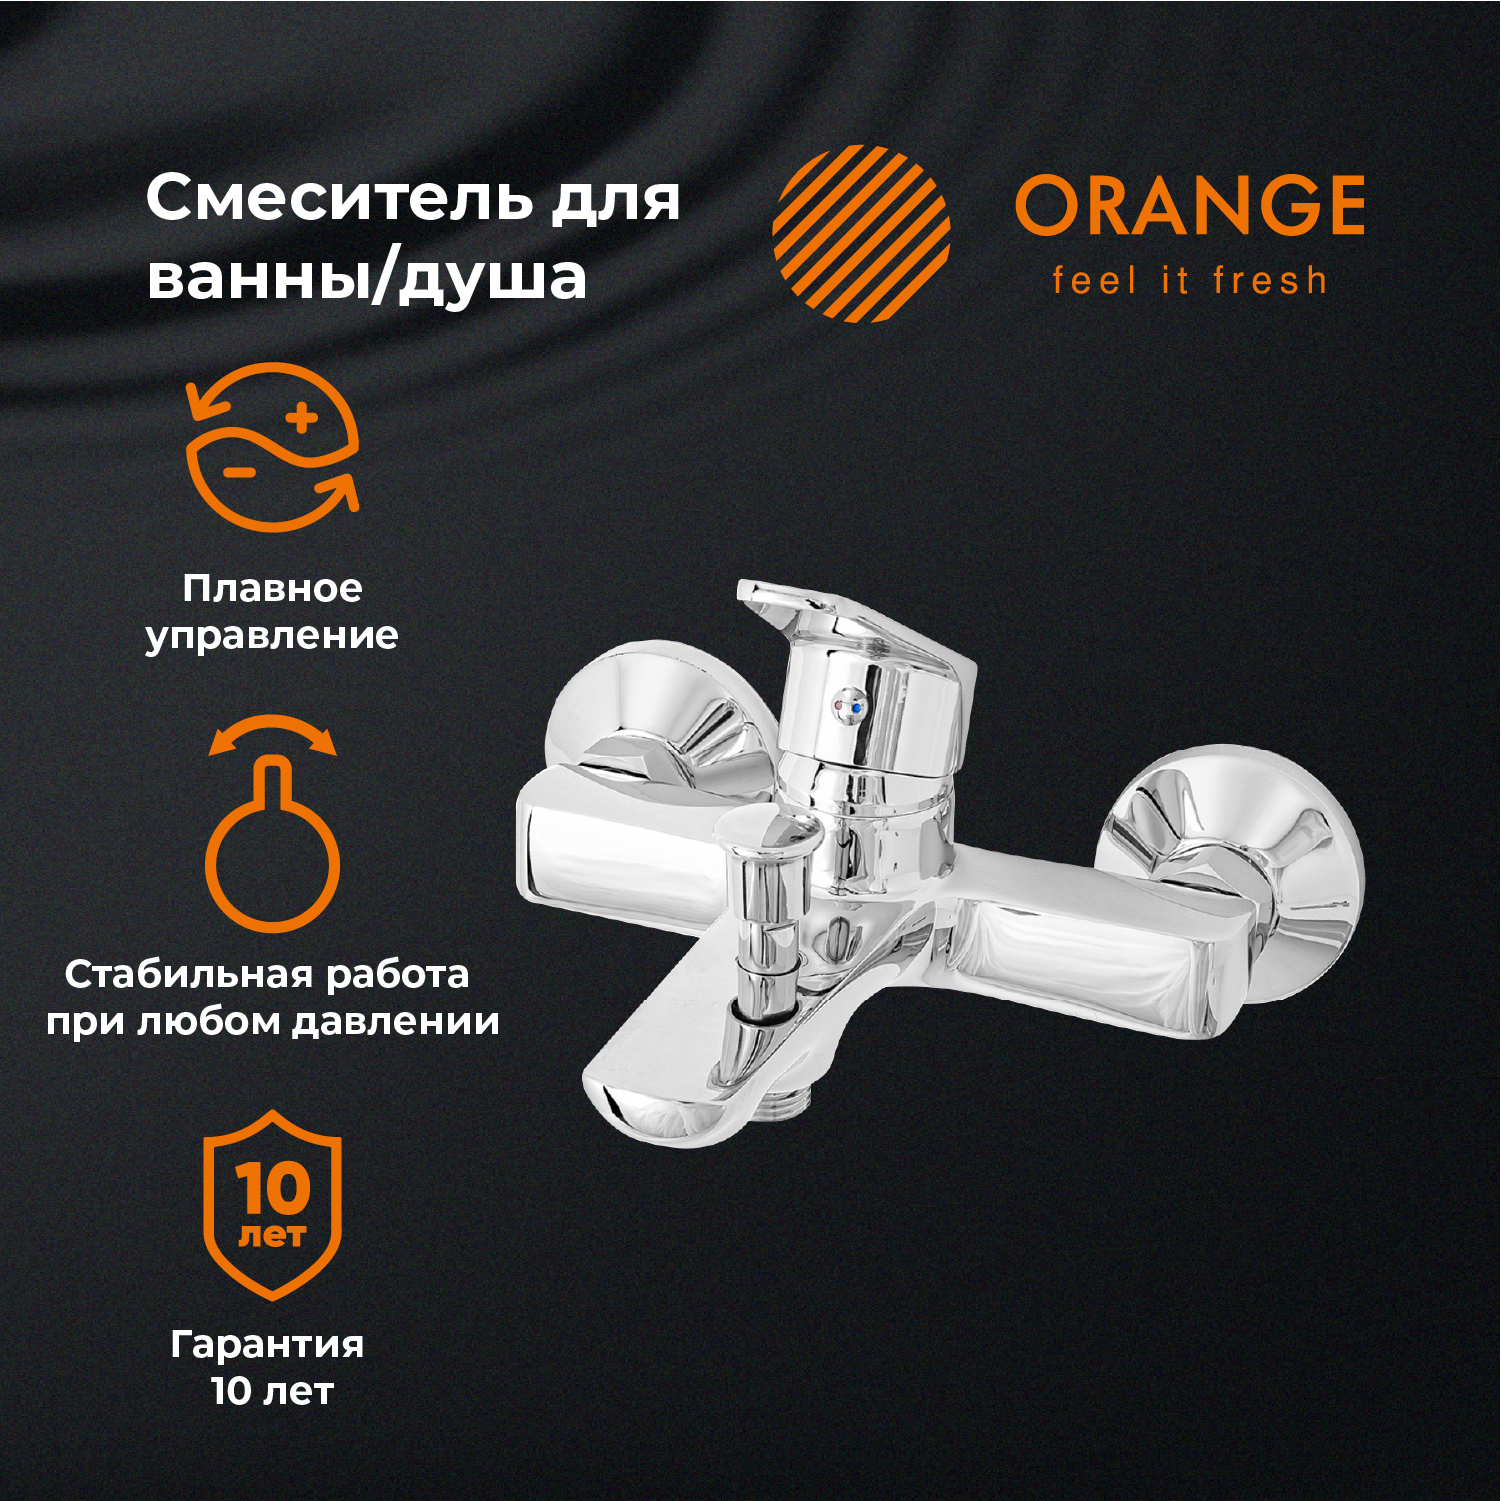 Смеситель для ванны и душа Orange FELIX M14-100cr цвет хром размораживатель стекол felix